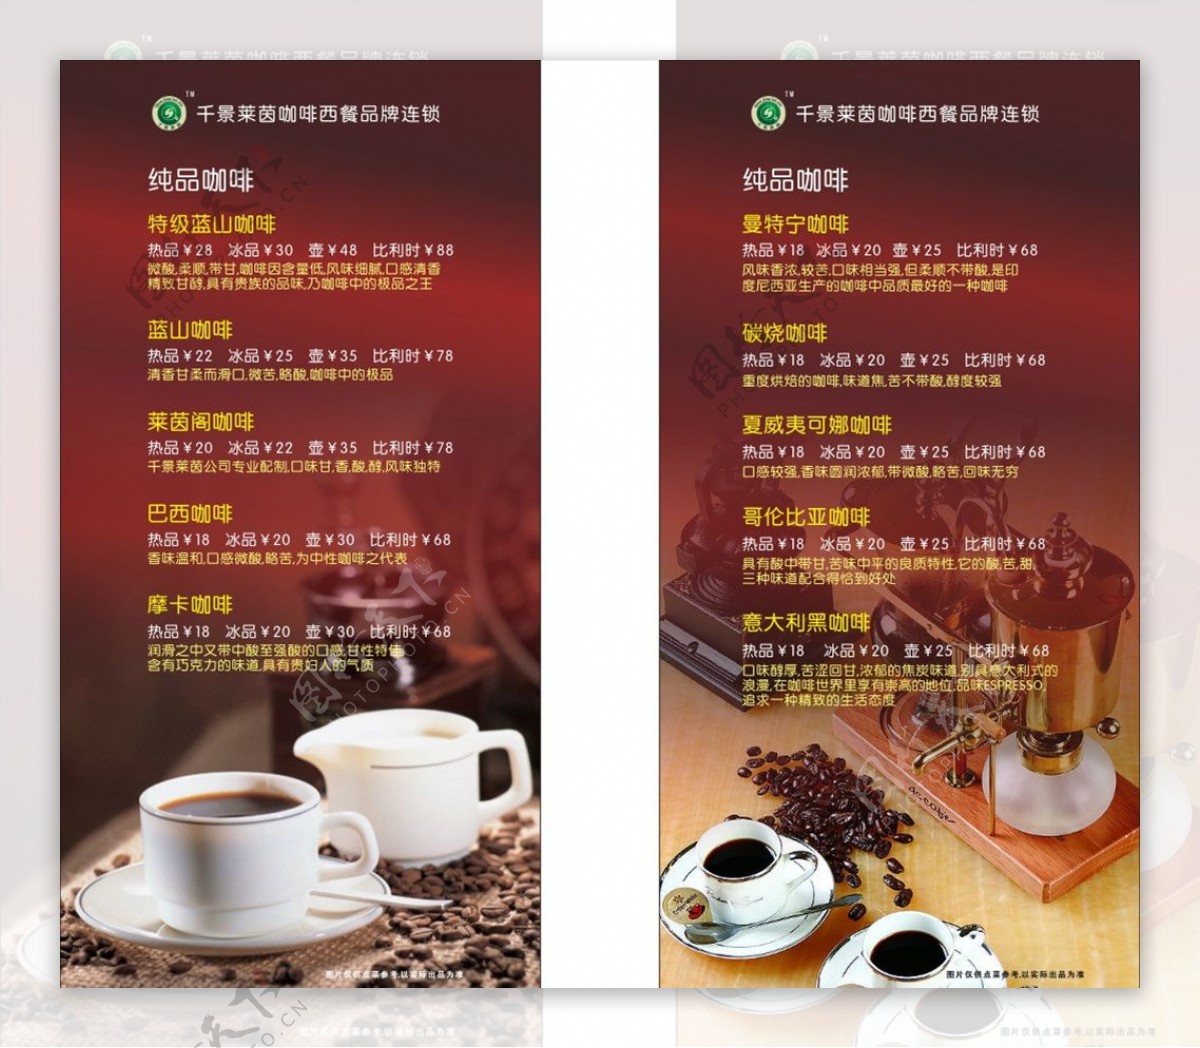 咖啡店菜单折页图片